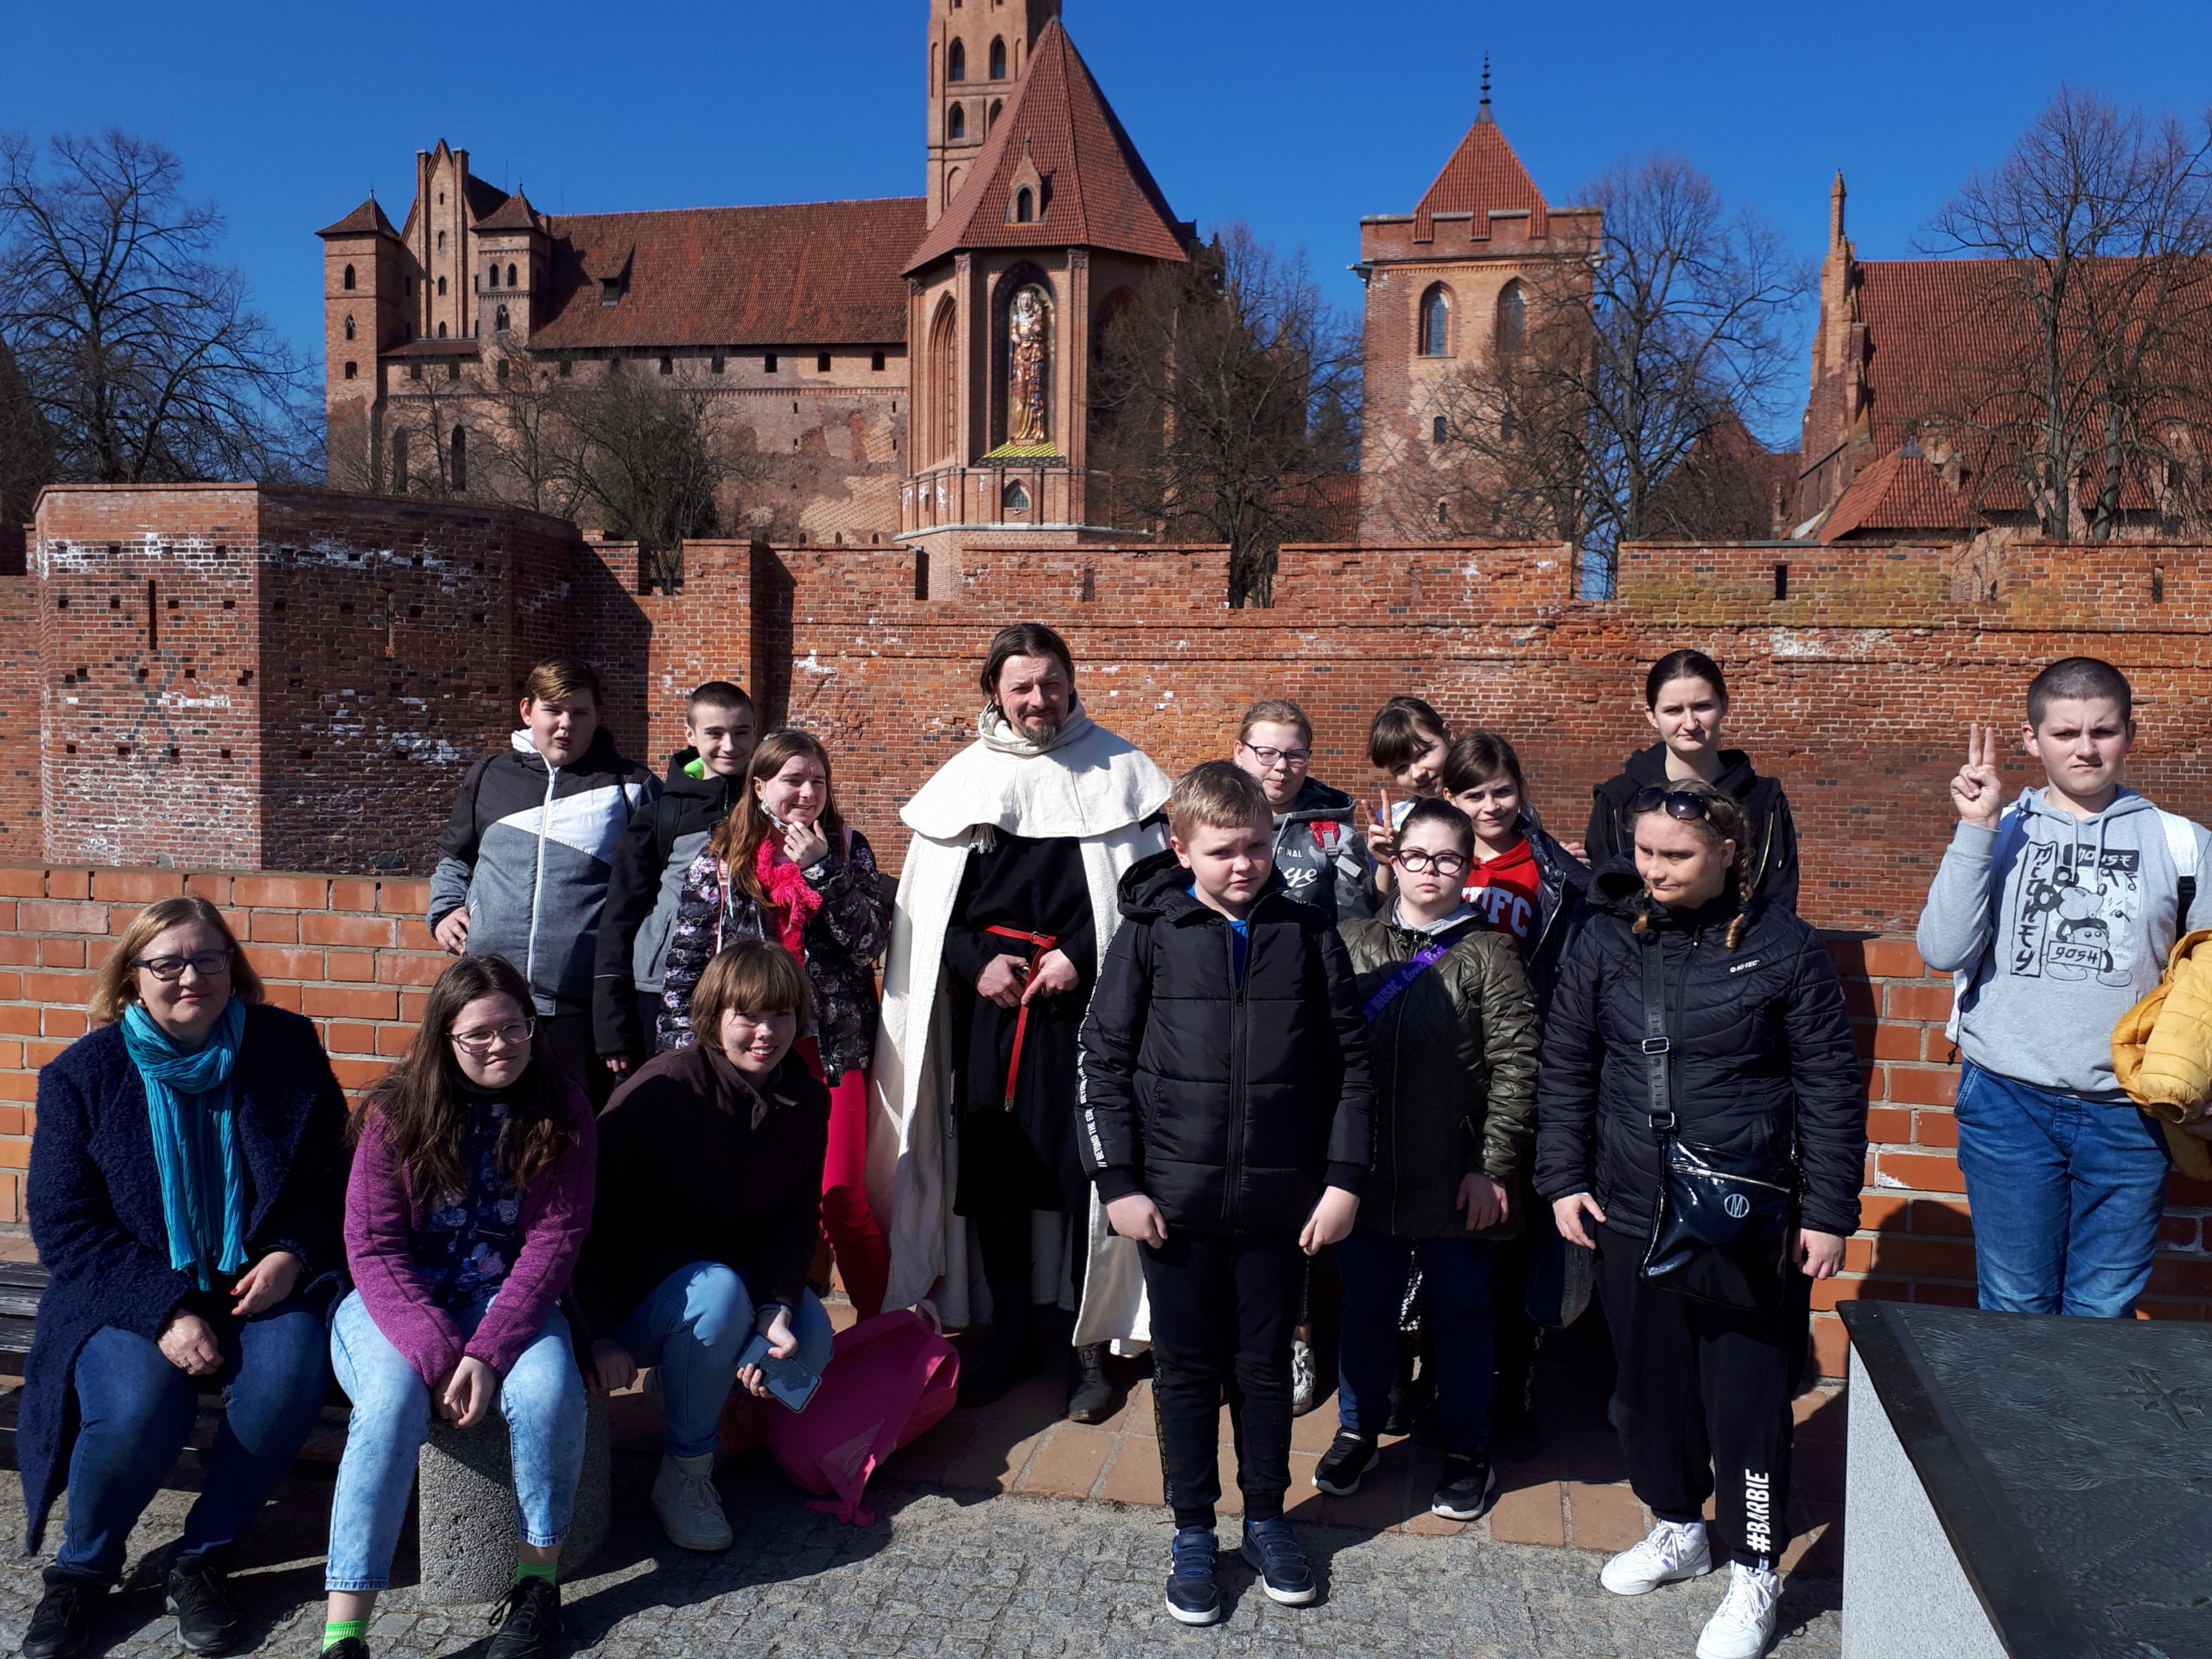 Z wizytą w dawnej twierdzy rycerskiej, a inaczej Zamek Krzyżacki w Malborku w wiosennej odsłonie